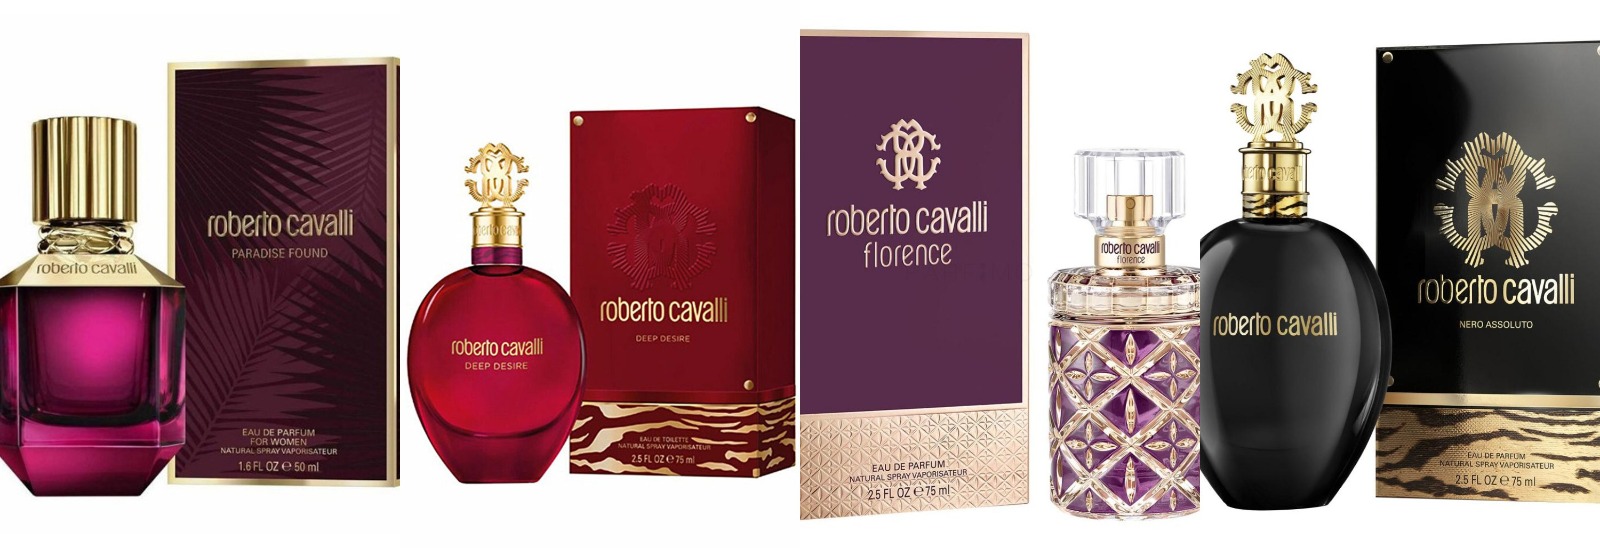 Parfumurile Roberto Cavalli au devenit o sursă de inspirație pentru femeile din întreaga lume